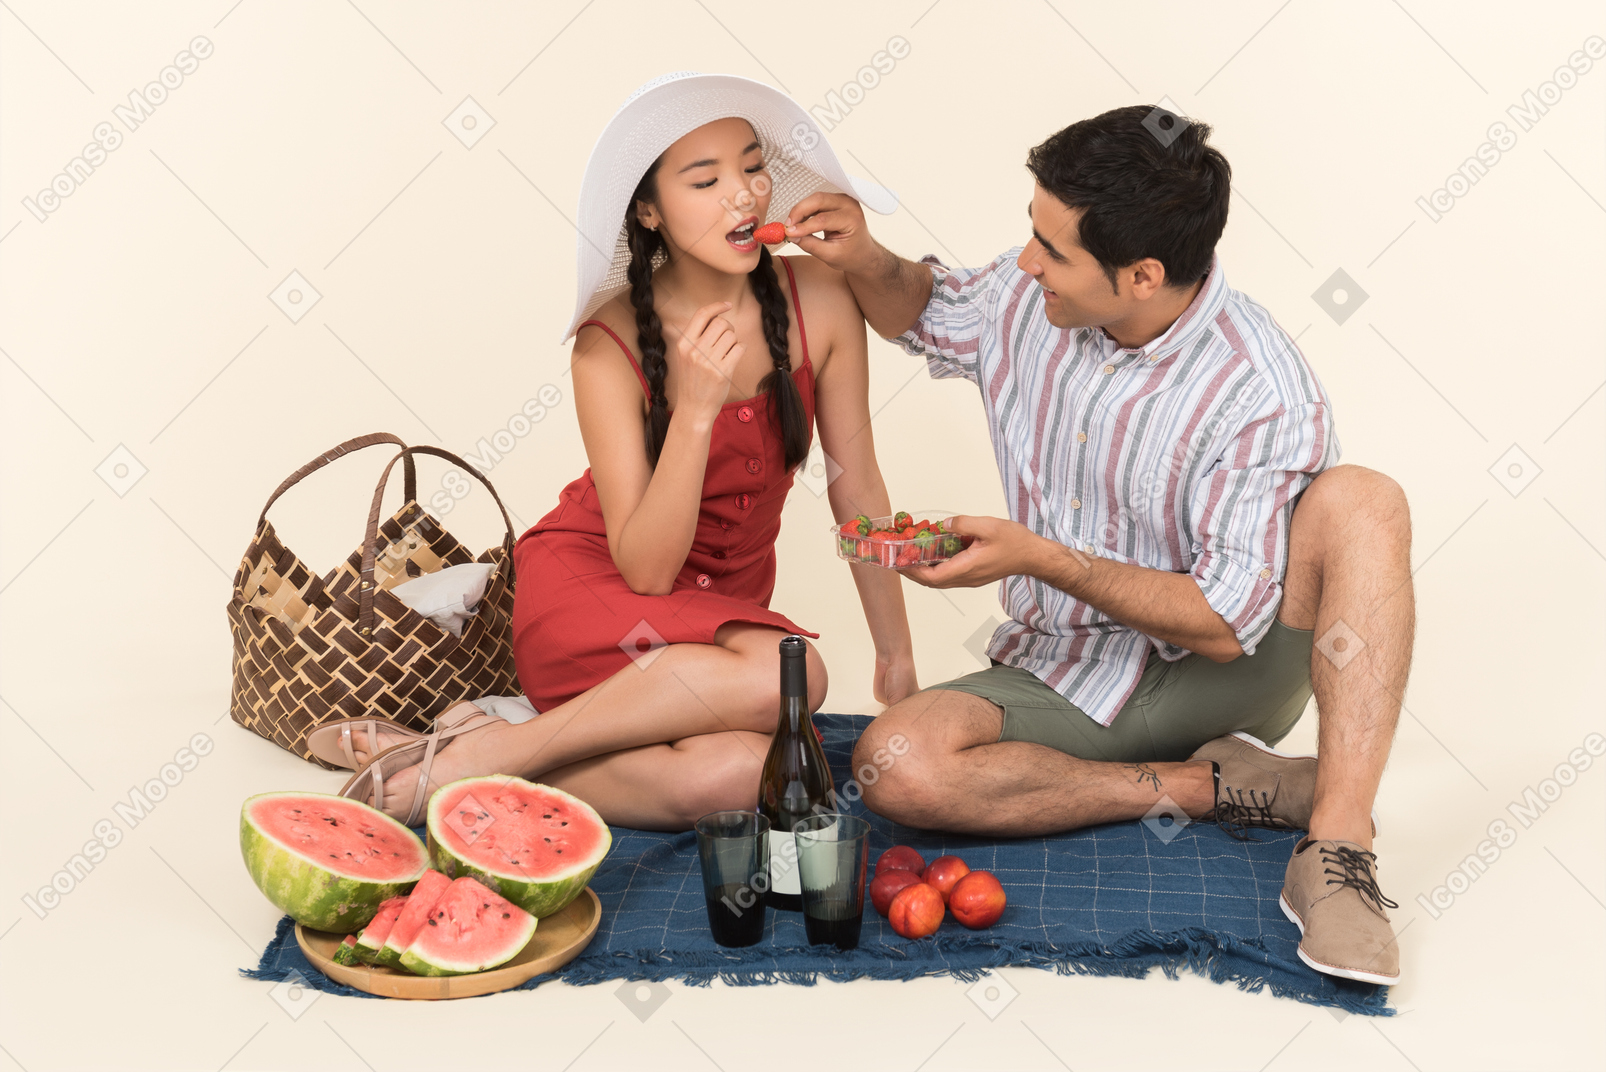 Zwischen verschiedenen rassen paare, die picknick haben und mann, der einem mädchen erdbeeren gibt